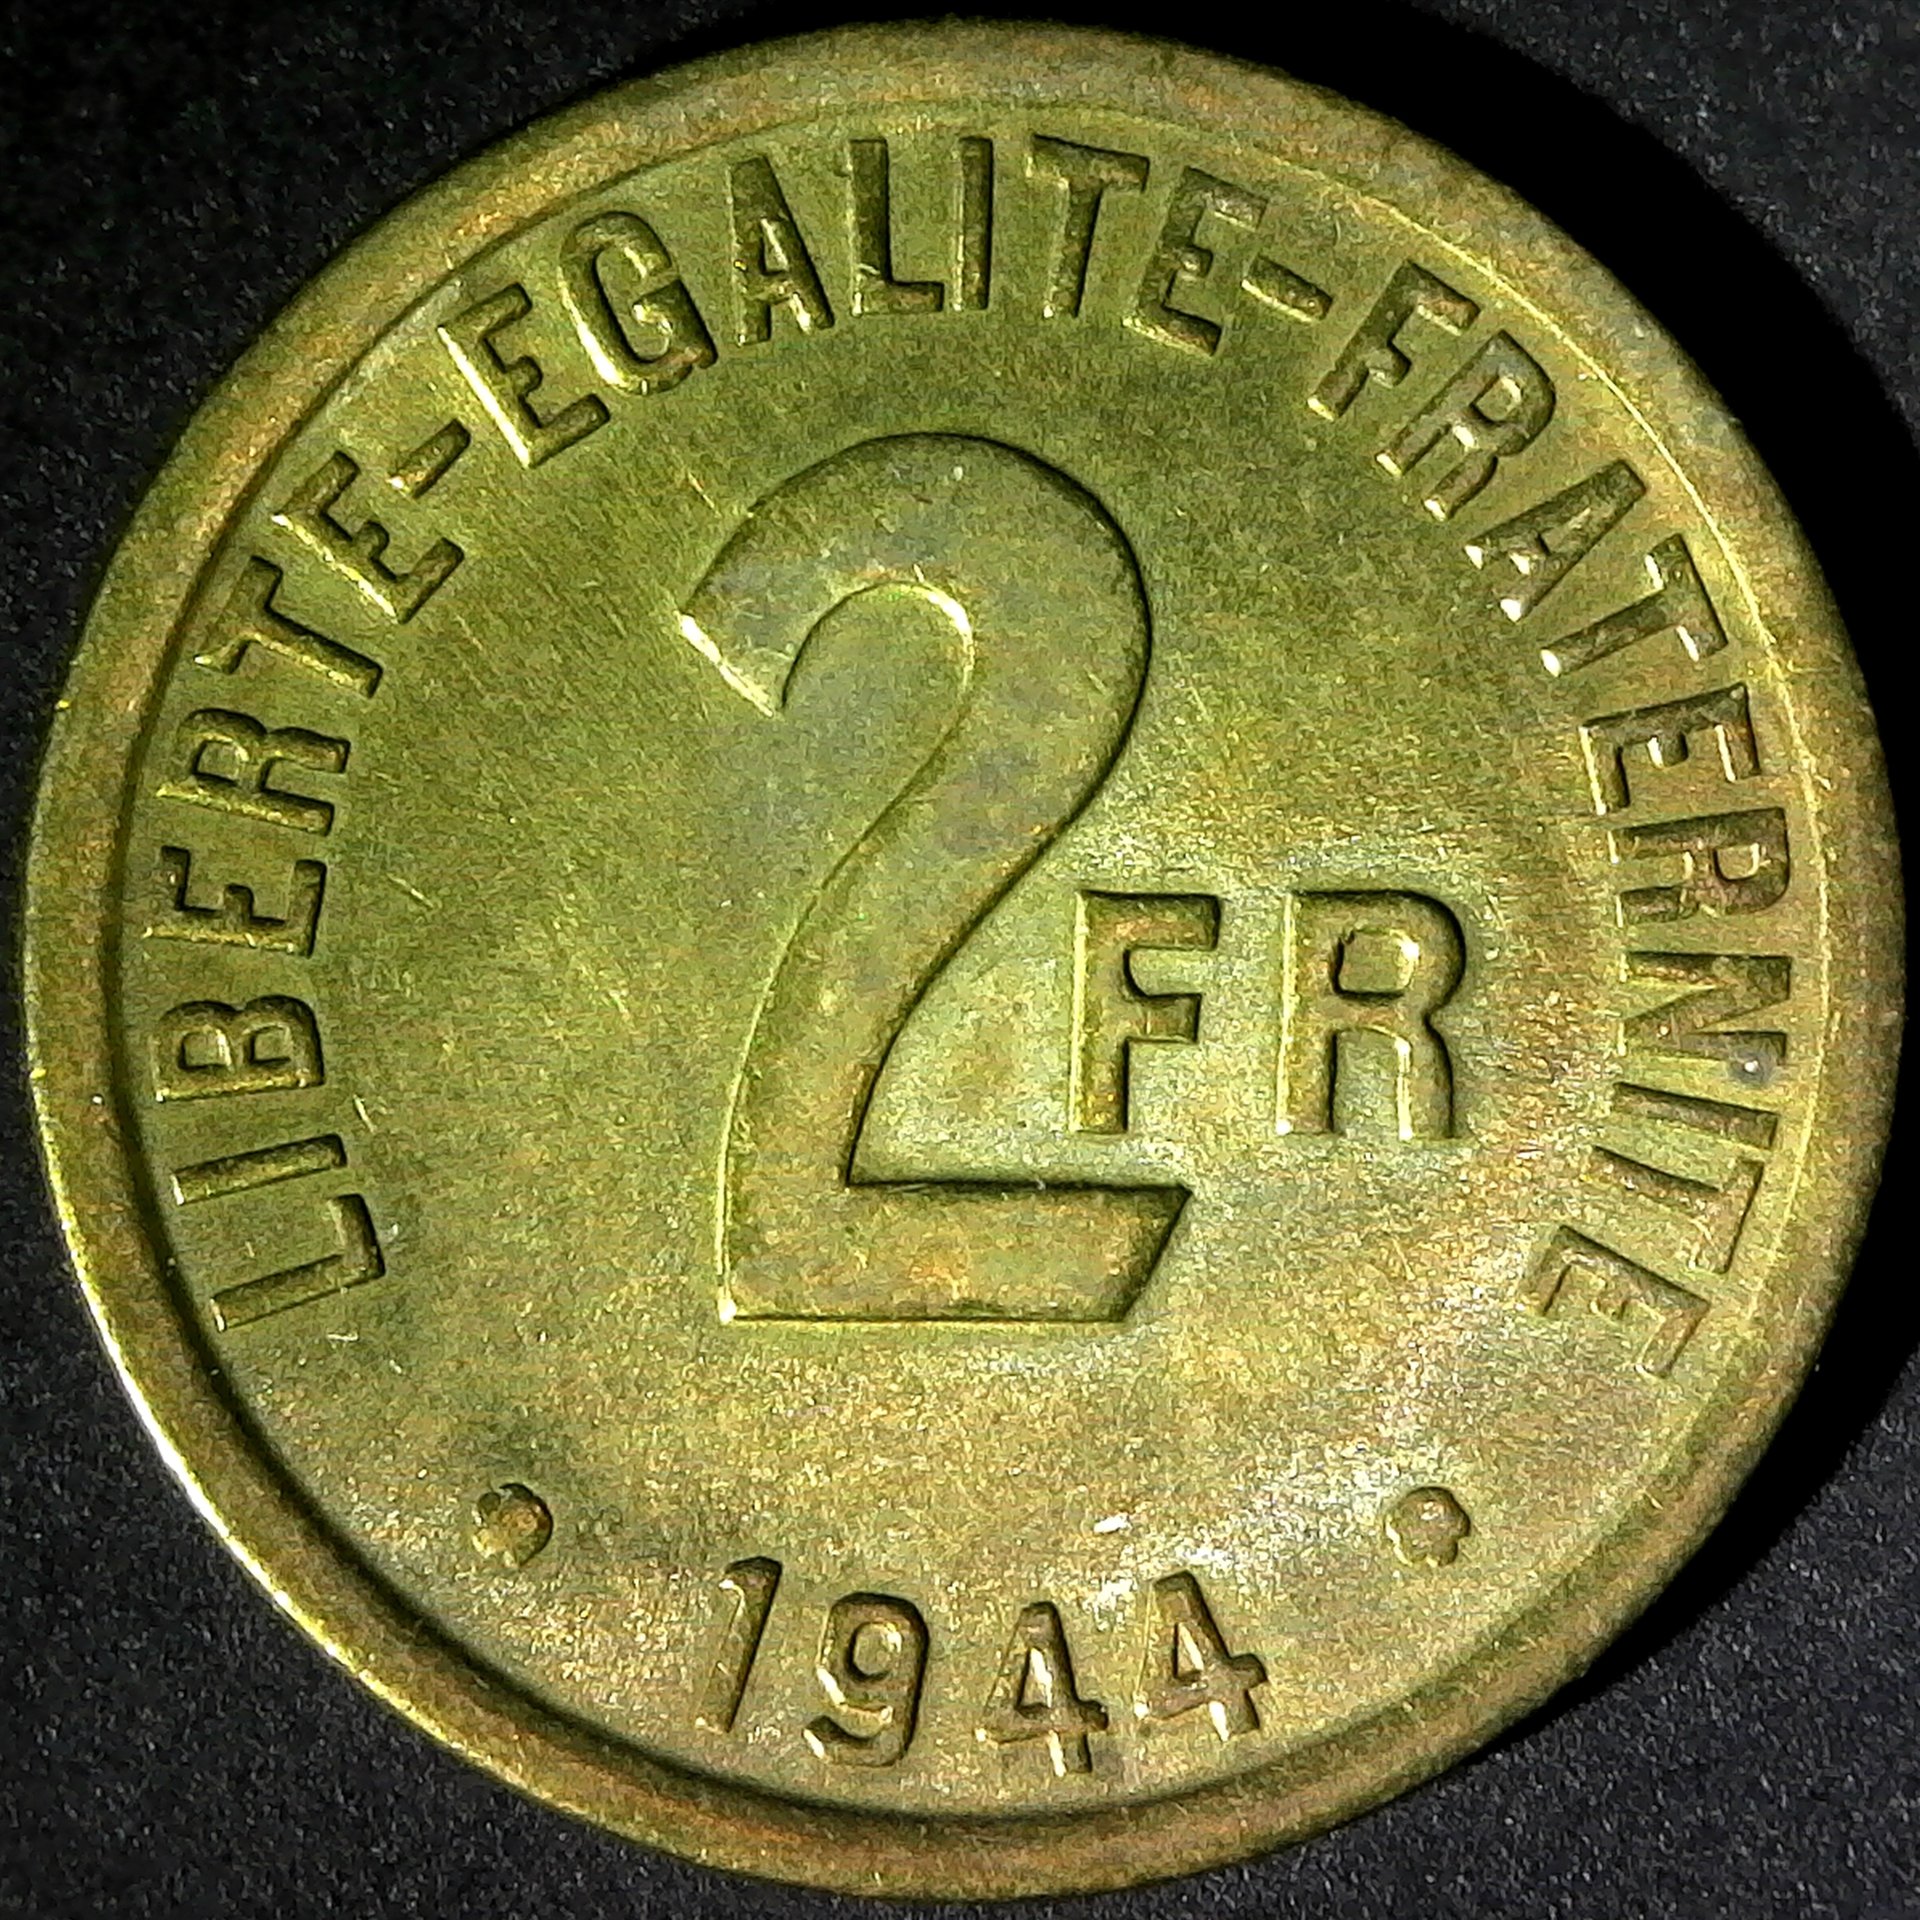 France 2 Francs 1944 obv.jpg